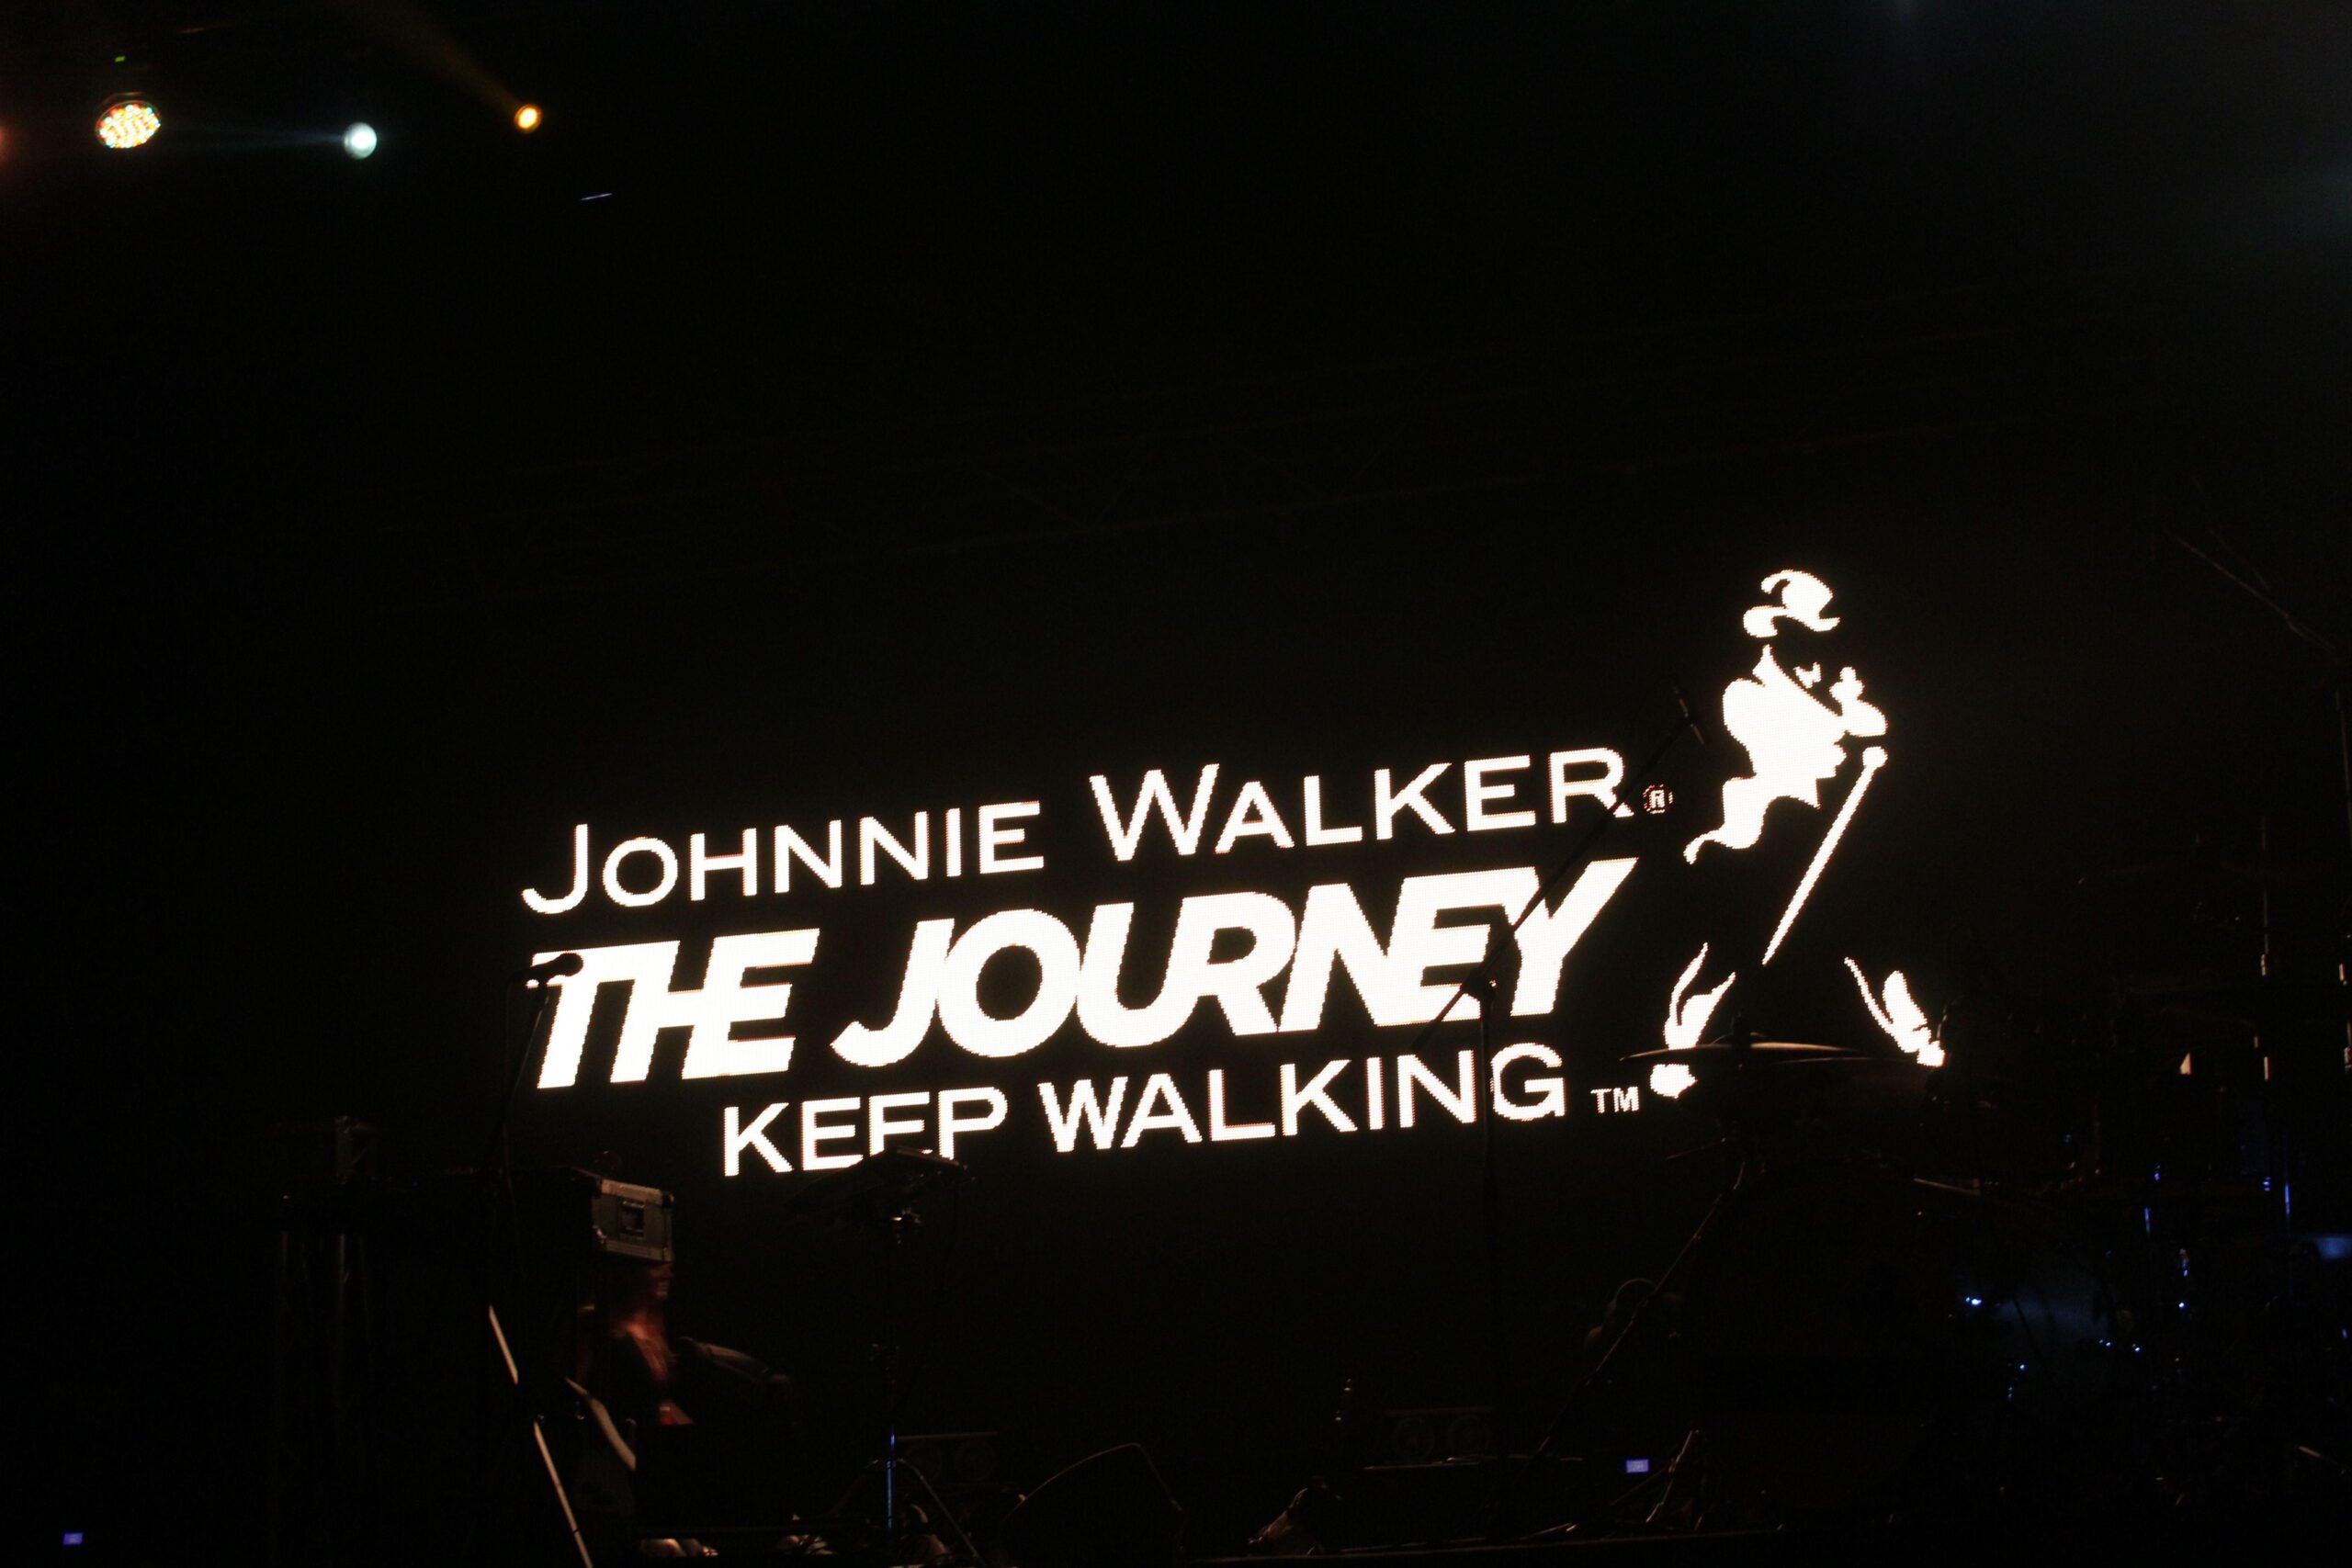 Johnnie Walker Hd Wallpaper, Johnnie Walker, Other